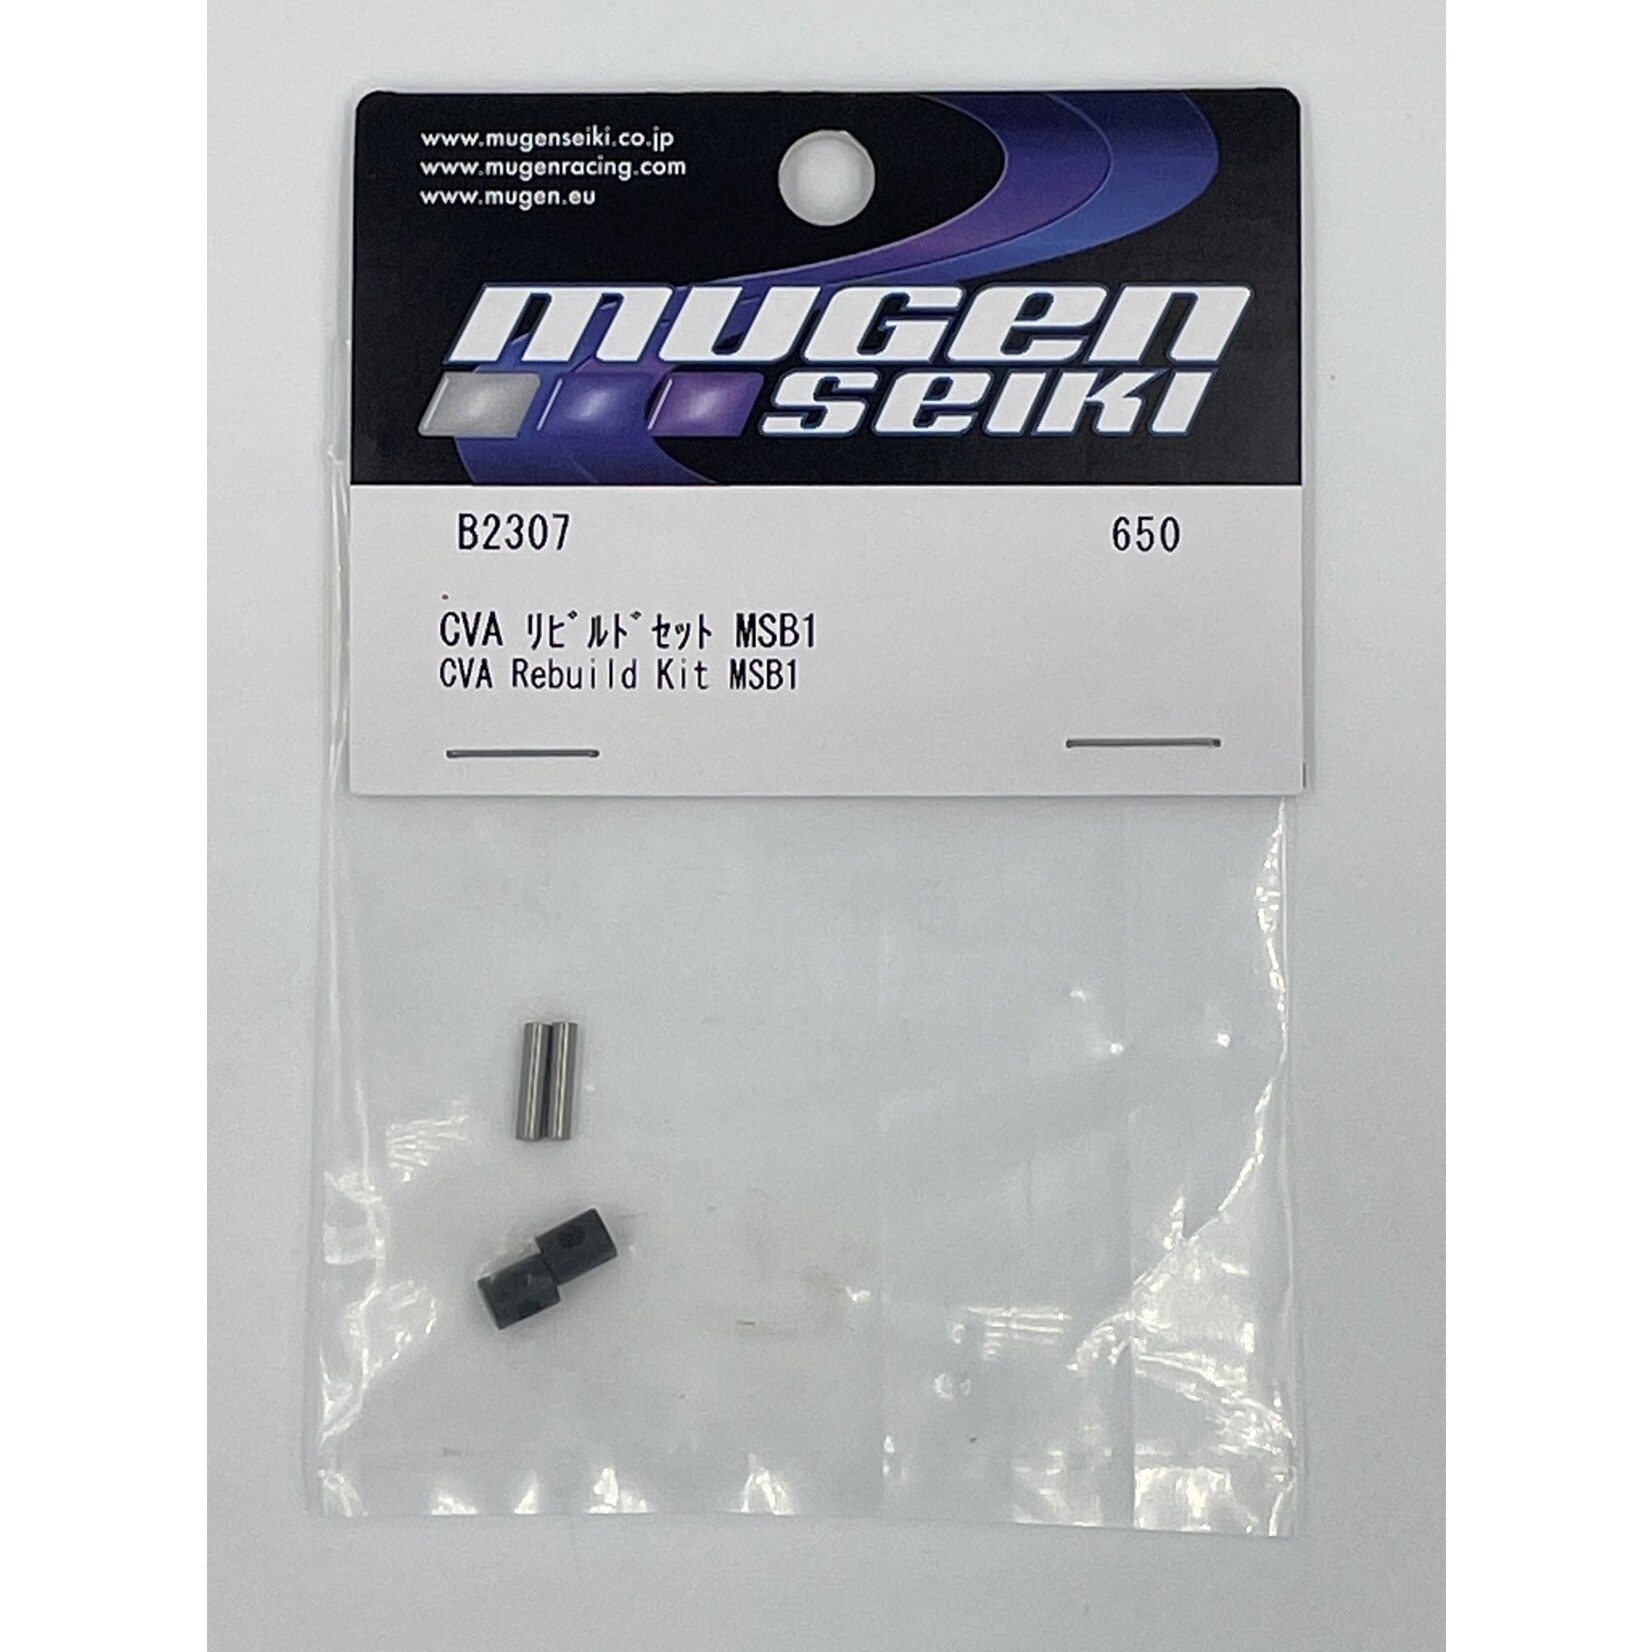 Mugen B2307 Mugen CVA Rebuild Kit: MSB1